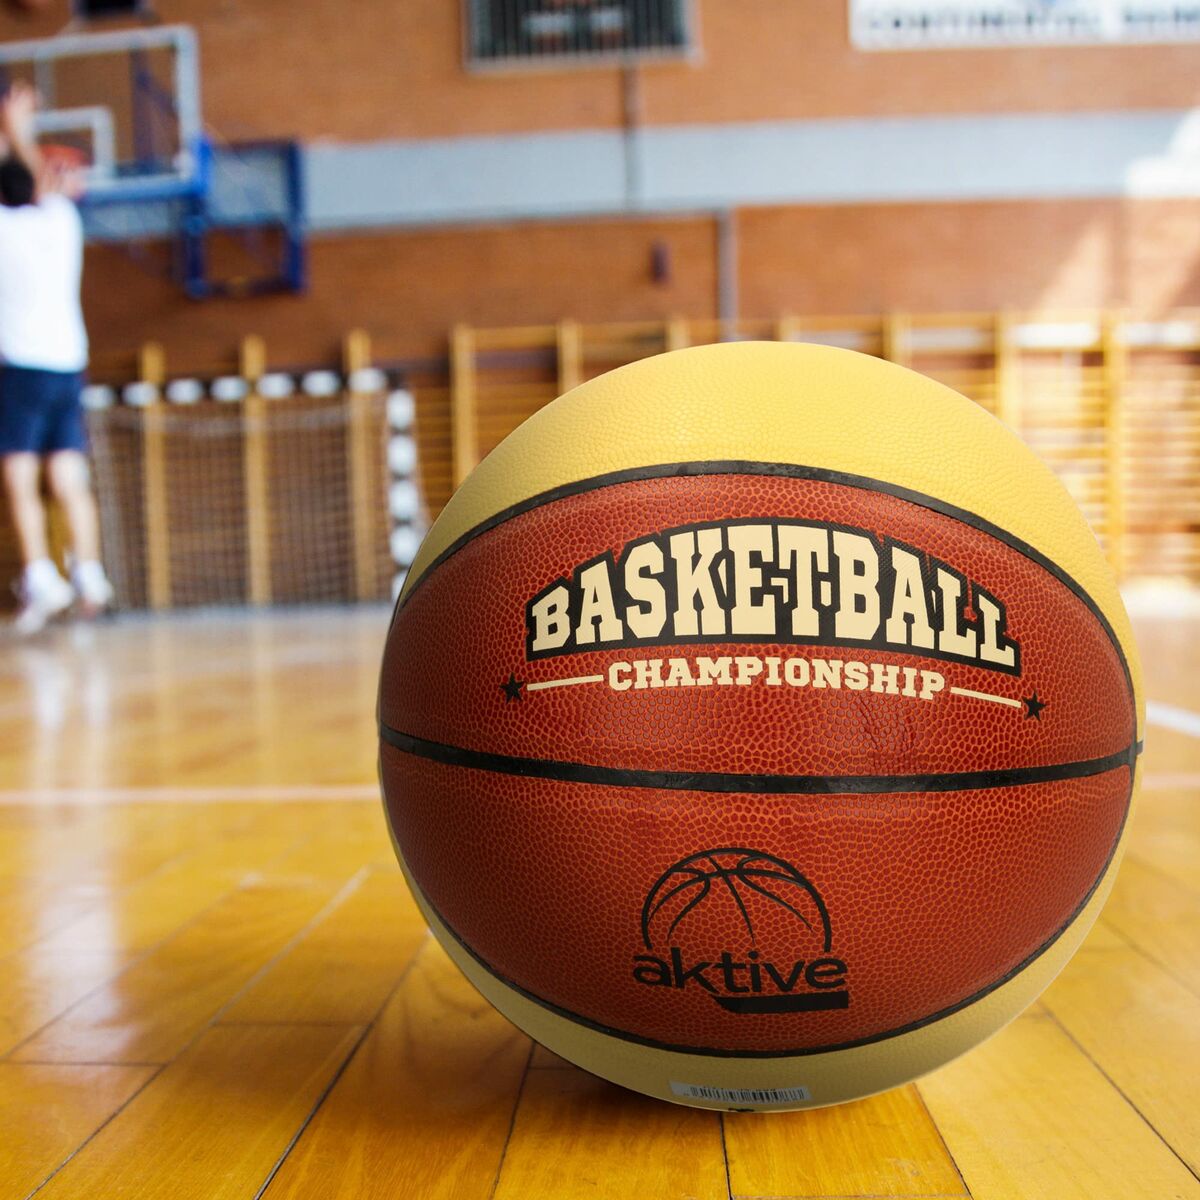 Basketball Aktive Größe 5 PVC